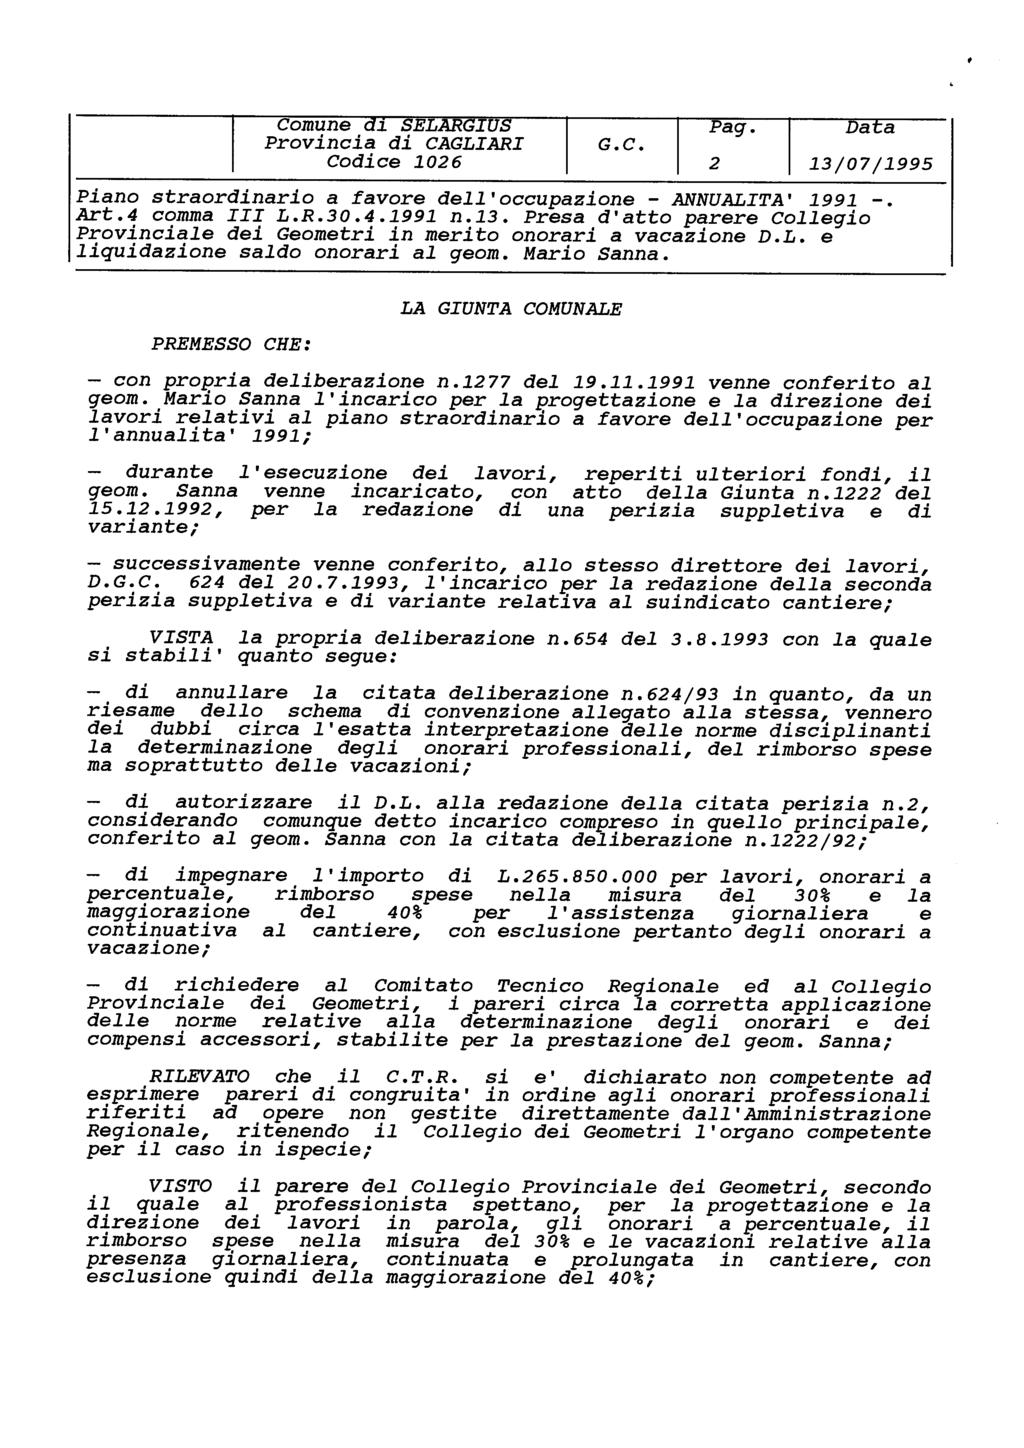 2 Piano straordinario a favore dell'occupazione - ANNUALITA 1991 -. PREMESSO CHE: LA GIUNTA COMUNALE con propria deliberazione n.1277 del 19.11.1991 venne conferito al geom.